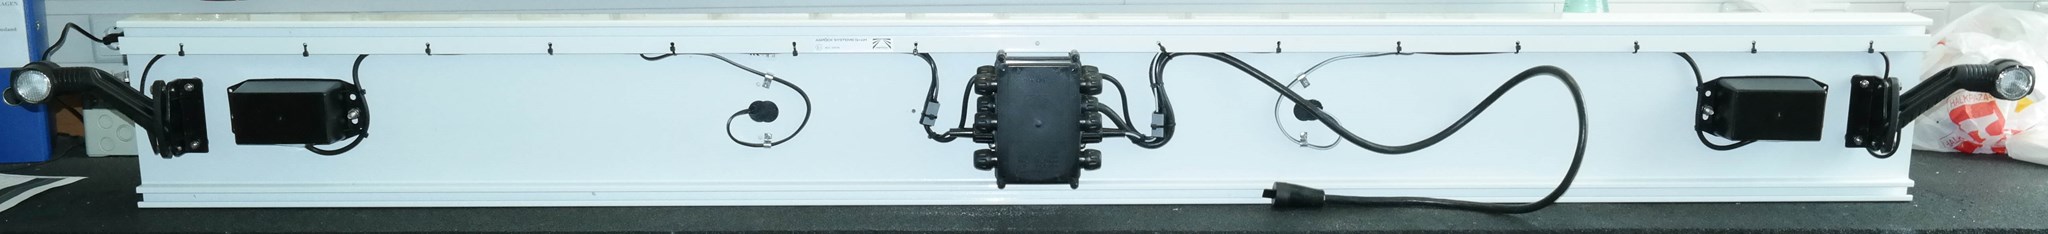 Immagine di 97-1190-007C Aspöck ALU Unterfahrschutz weiß Europoint III, Superpoint III LED